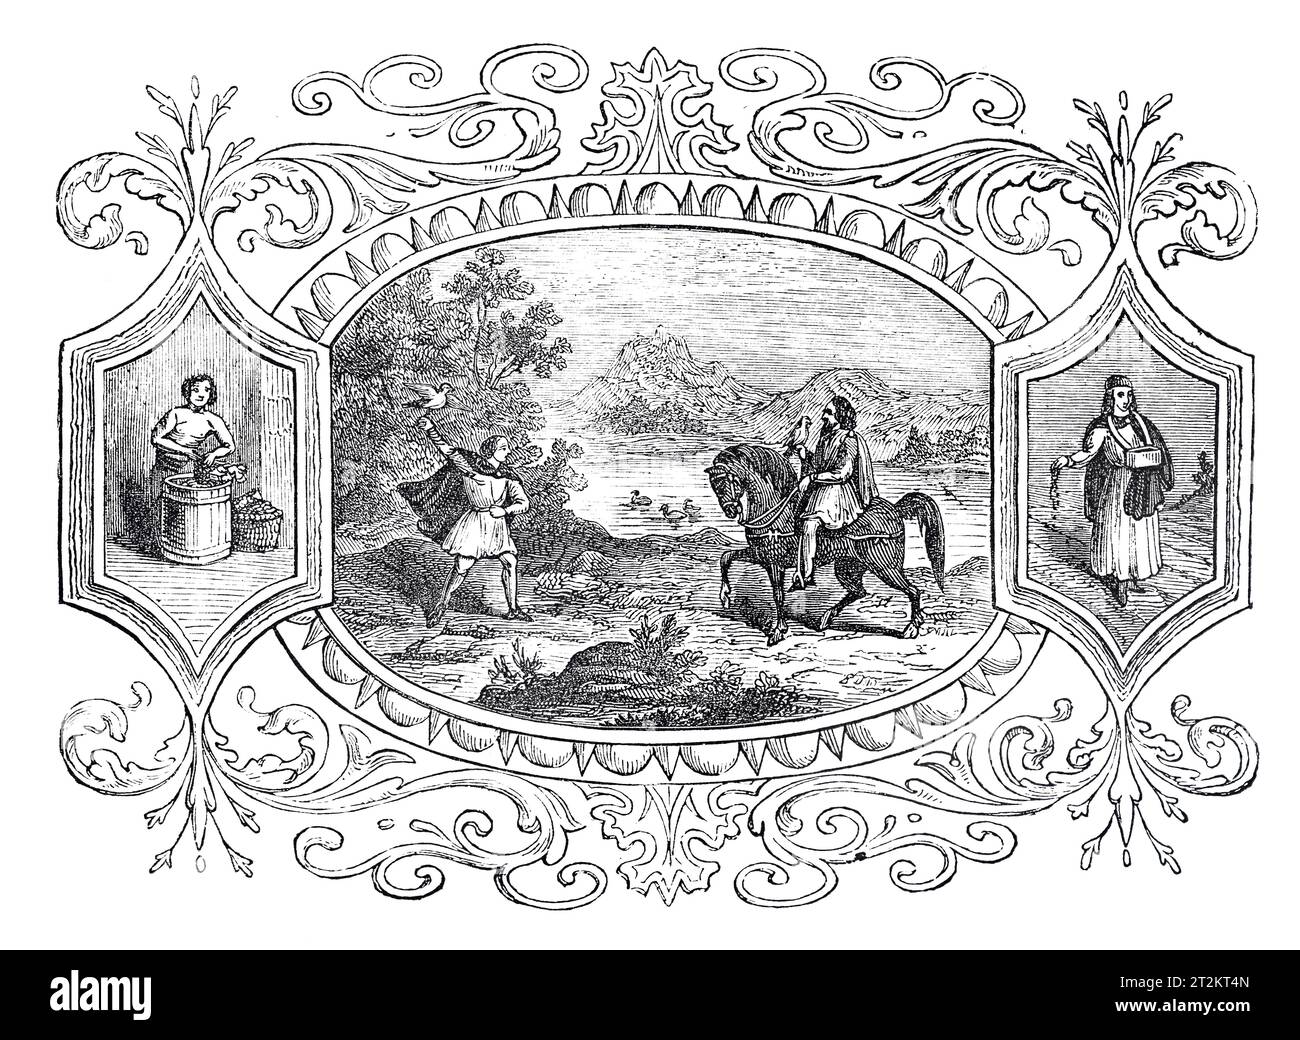 Emblemas sajones del mes de octubre; Ilustración en blanco y negro de la 'Vieja Inglaterra' publicada por James Sangster en 1860. Foto de stock